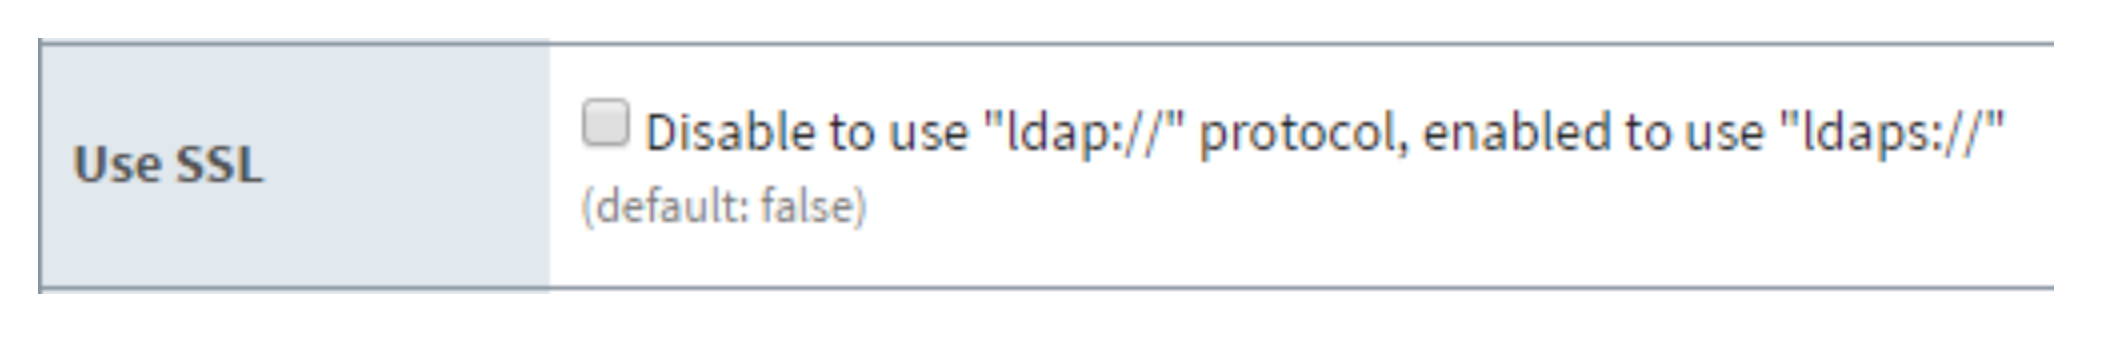 LDAP - Use SSL